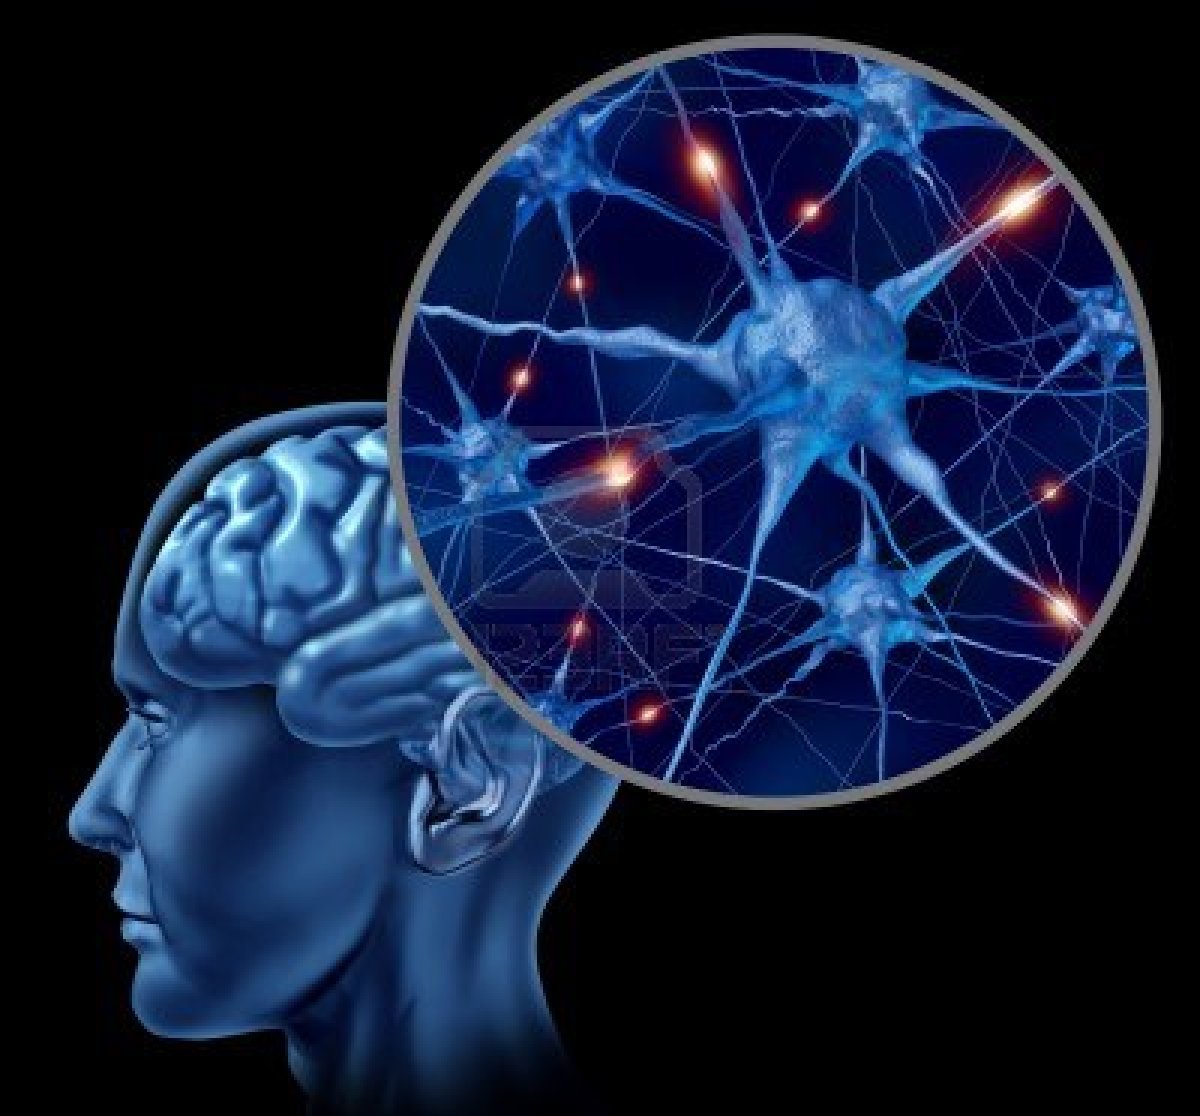 ilutracion conexion entre neuronas en el cerebro